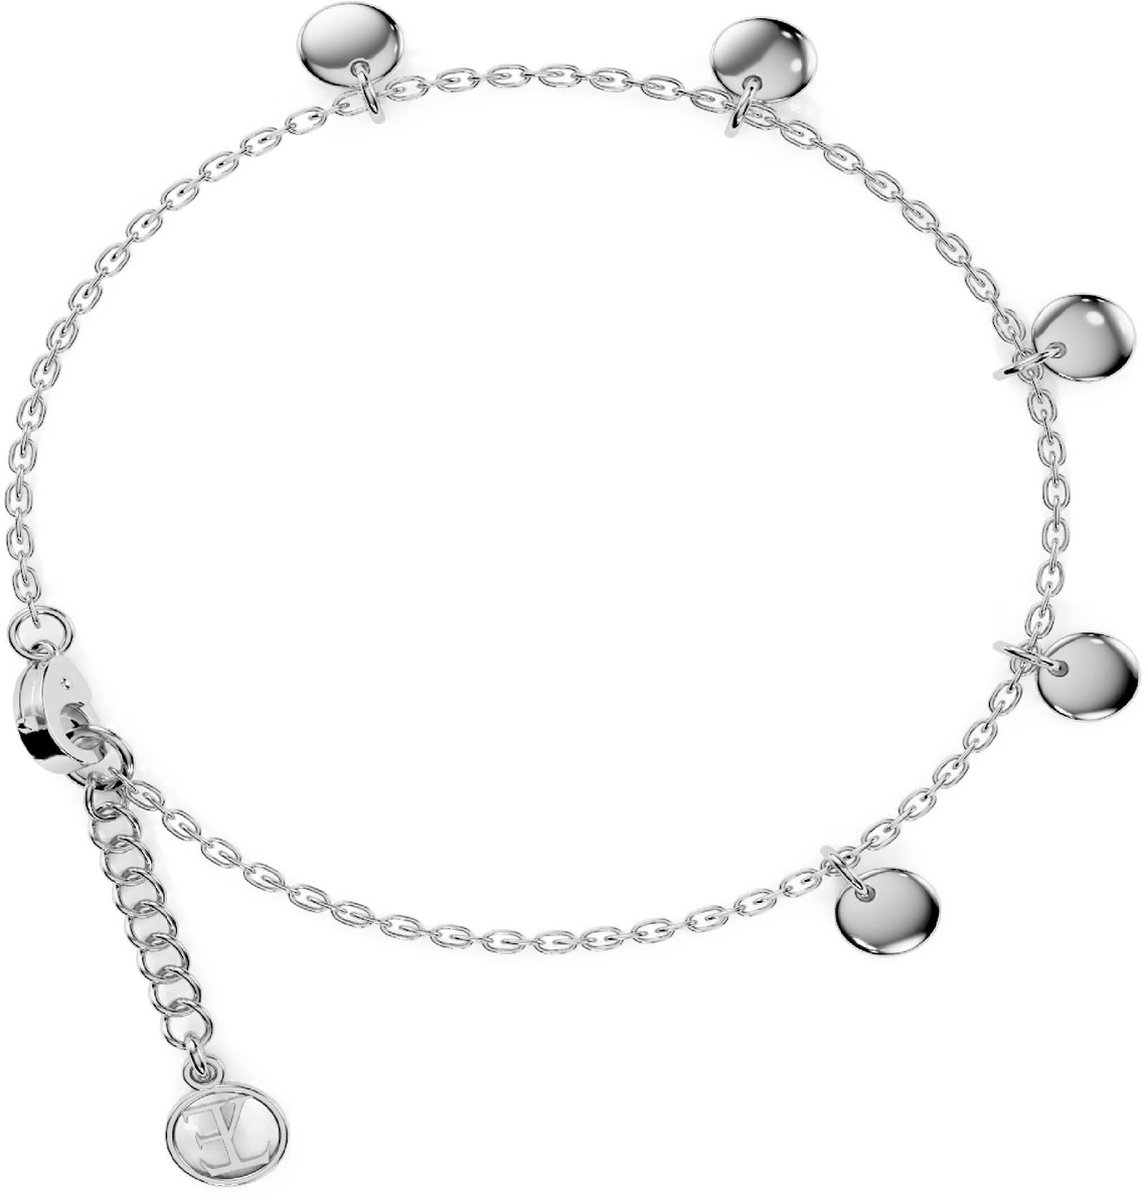 Elysian Armband Dames - Echt Zilver 925 - Rhodium - Luxe geschenkdoos - 16 + 4 cm